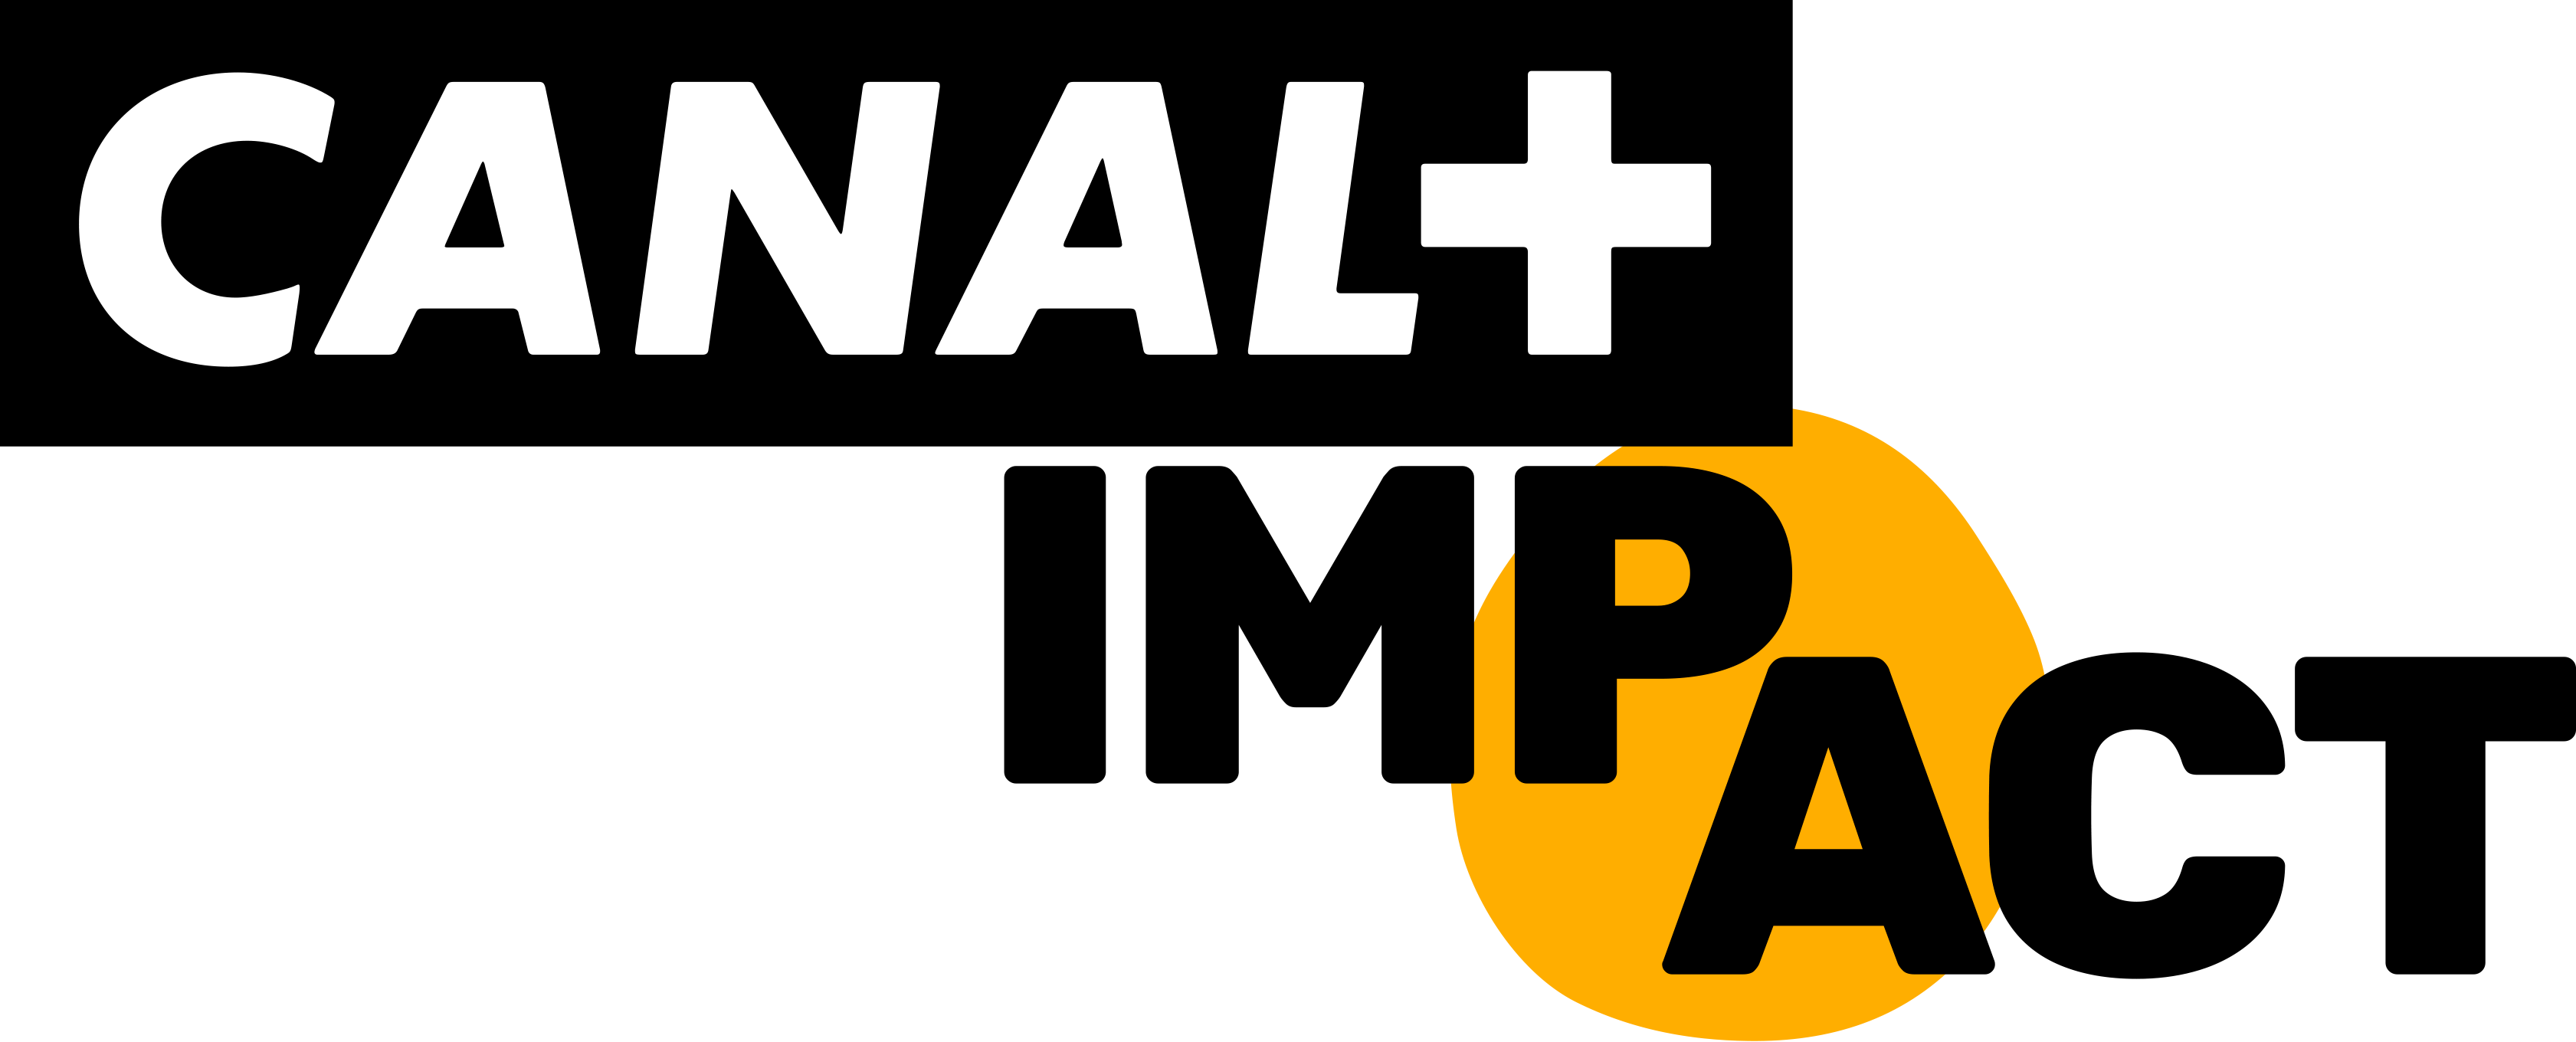 afretail-partenaires-canal-impact-logo